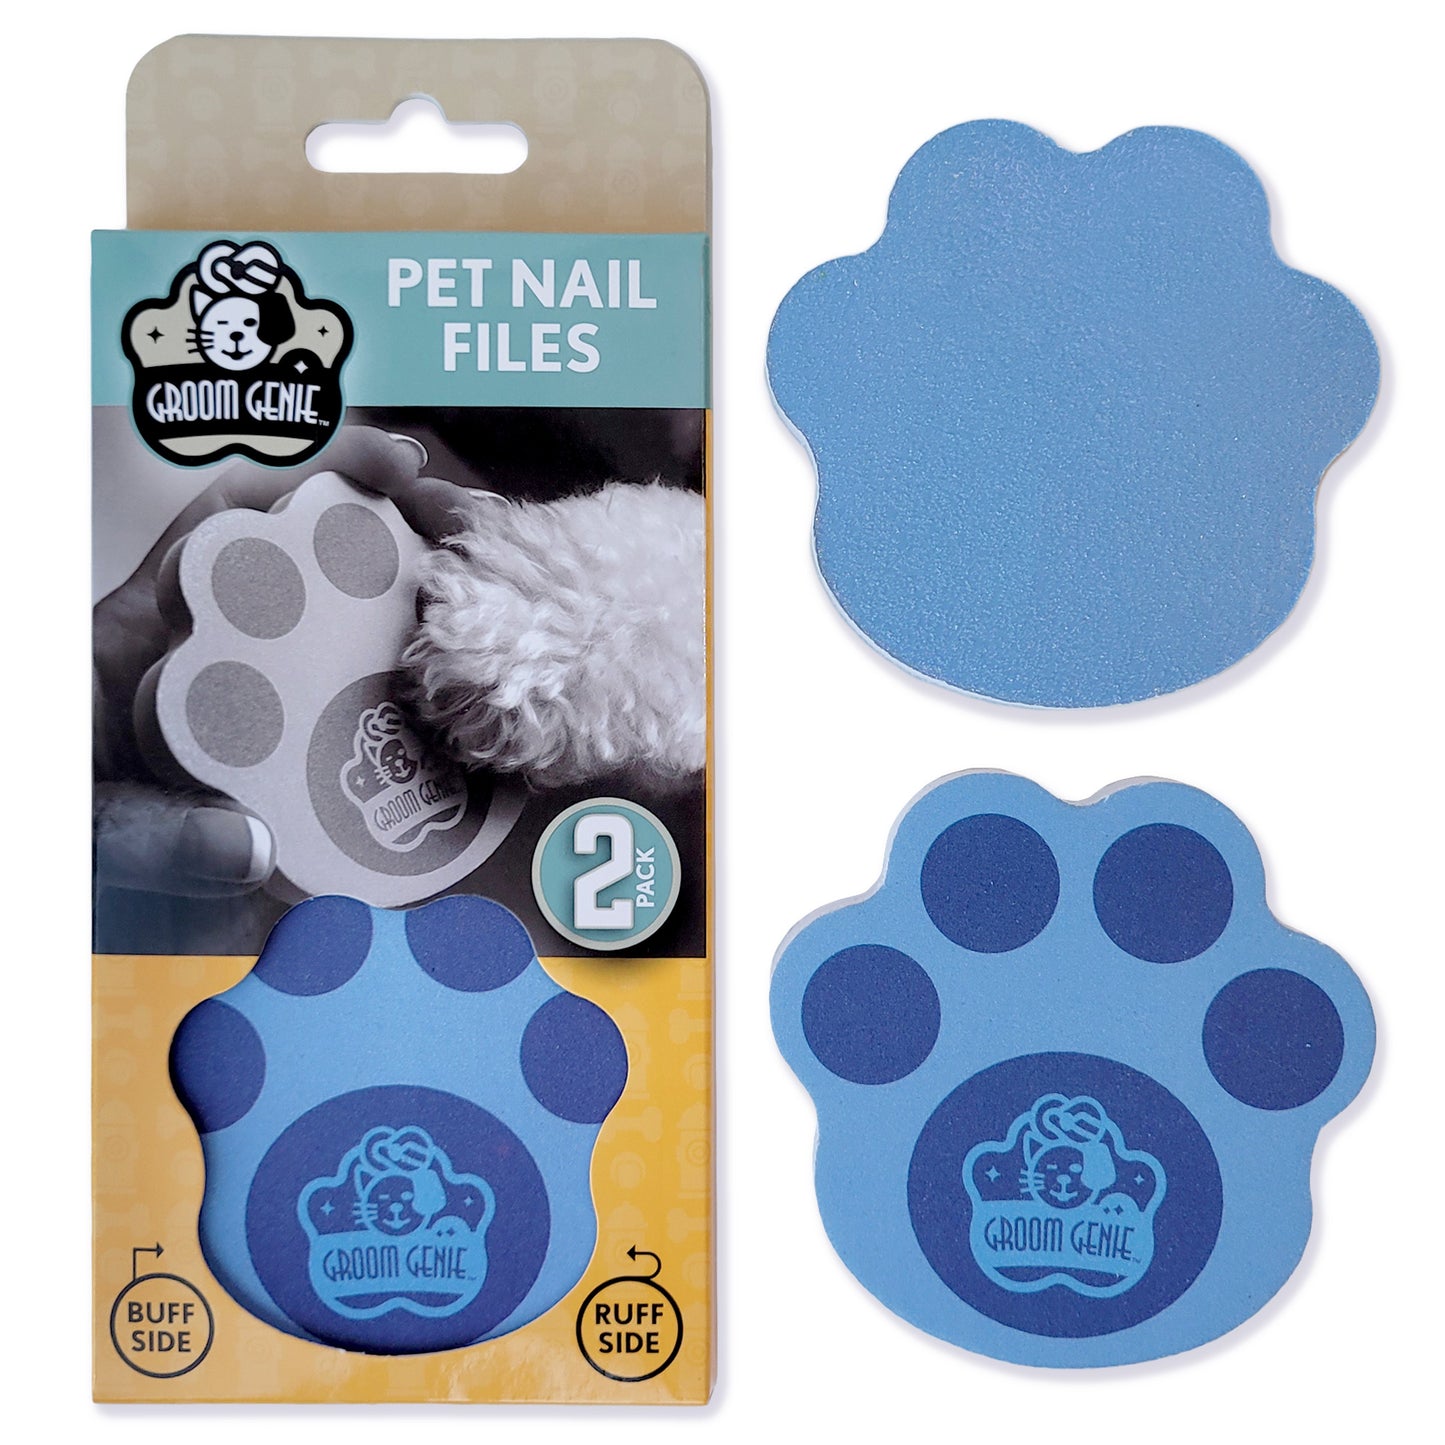 Groom Genie Pet Nail File 2 Pack